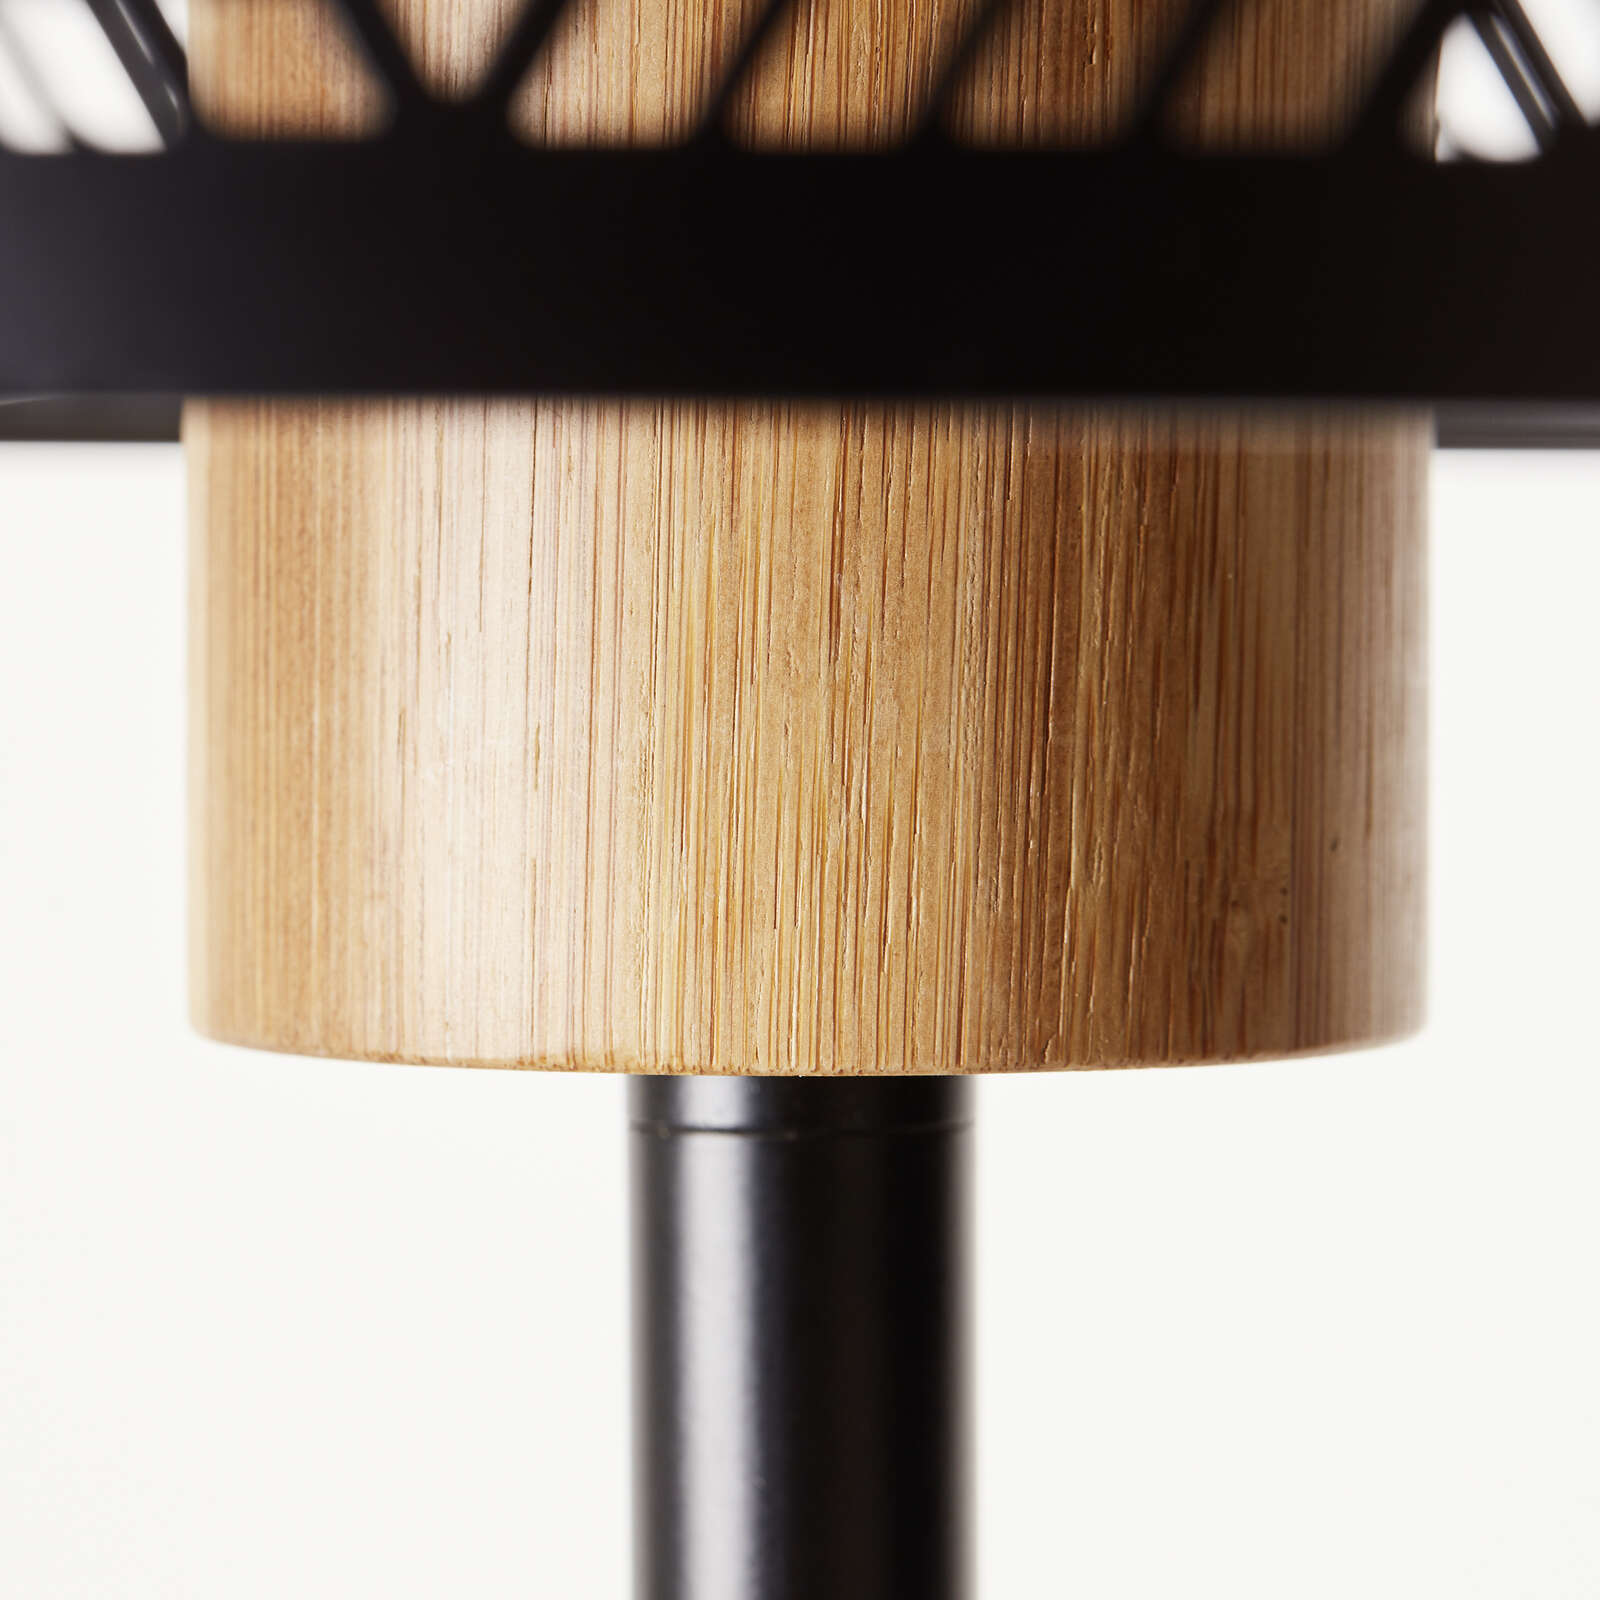             Bamboo floor lamp - Moritz 4 - Brown
        